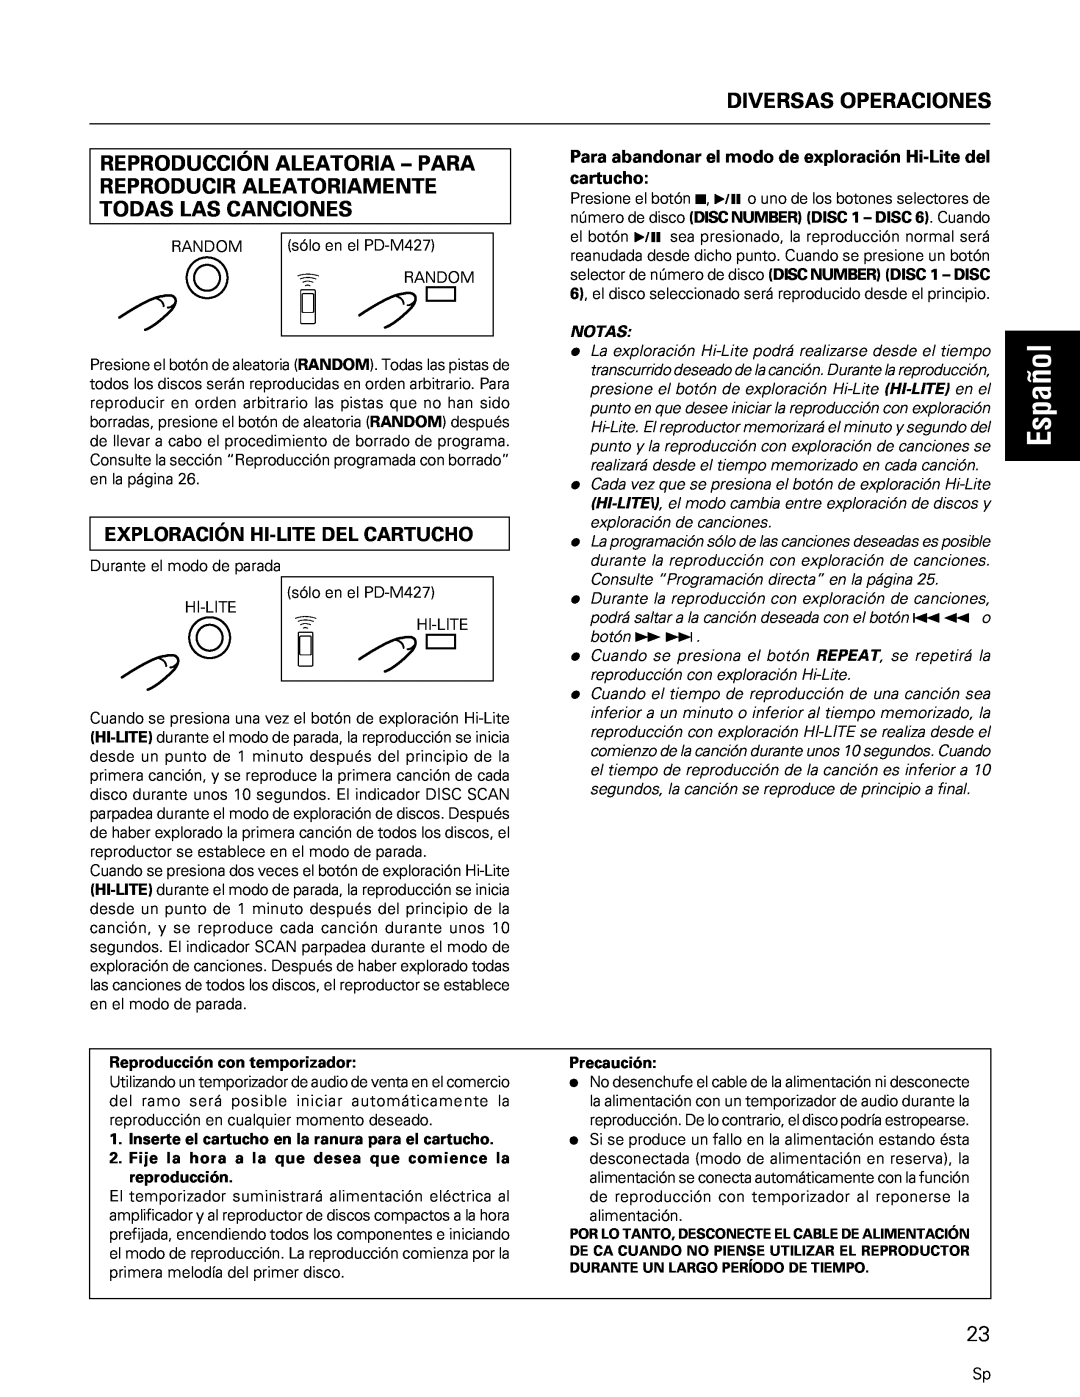 Pioneer PD-M427, PD-M407 manual Español, Diversas Operaciones, Exploración Hi-Litedel Cartucho, Notas 